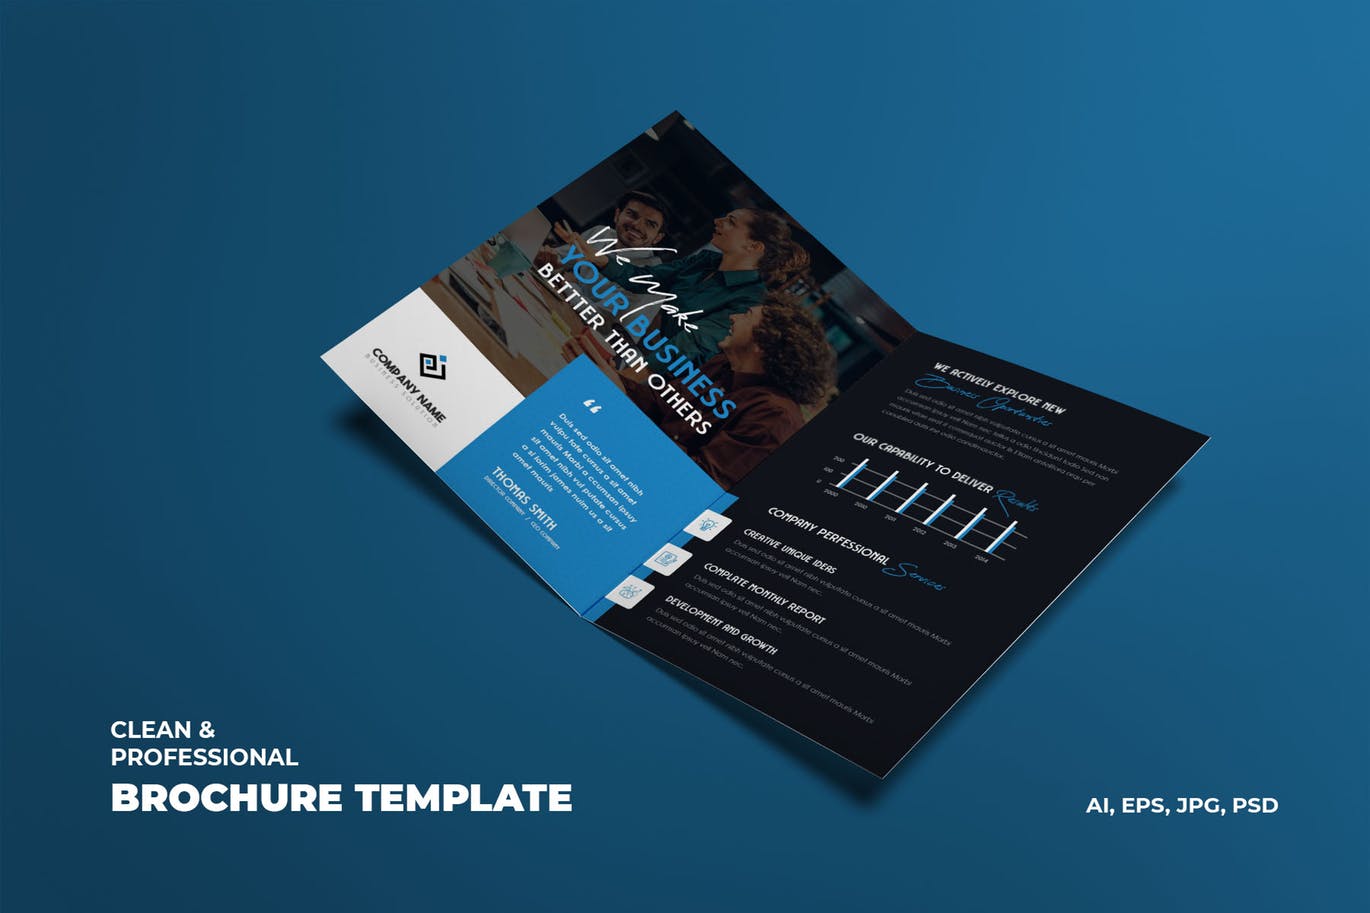 商业公司对折宣传单设计模板 Creative Business & Corporate Brochure Template插图